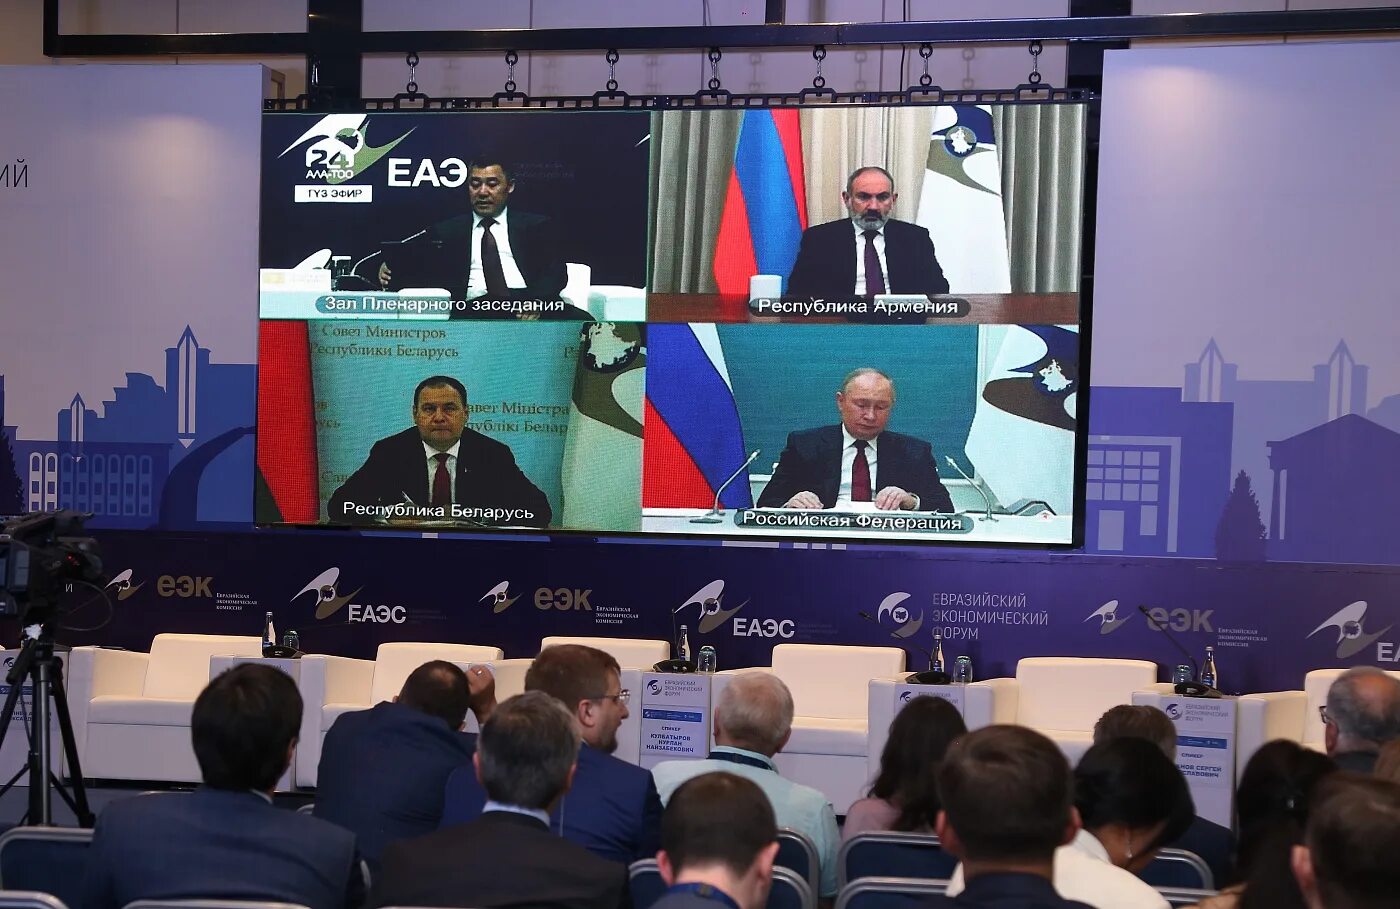 Евразийский экономический форум. ЕАЭС 2022. Бишкек 2022 саммит ЕАЭС. Евроазиатский экономический форум. Евразийский экономический форум 2022.